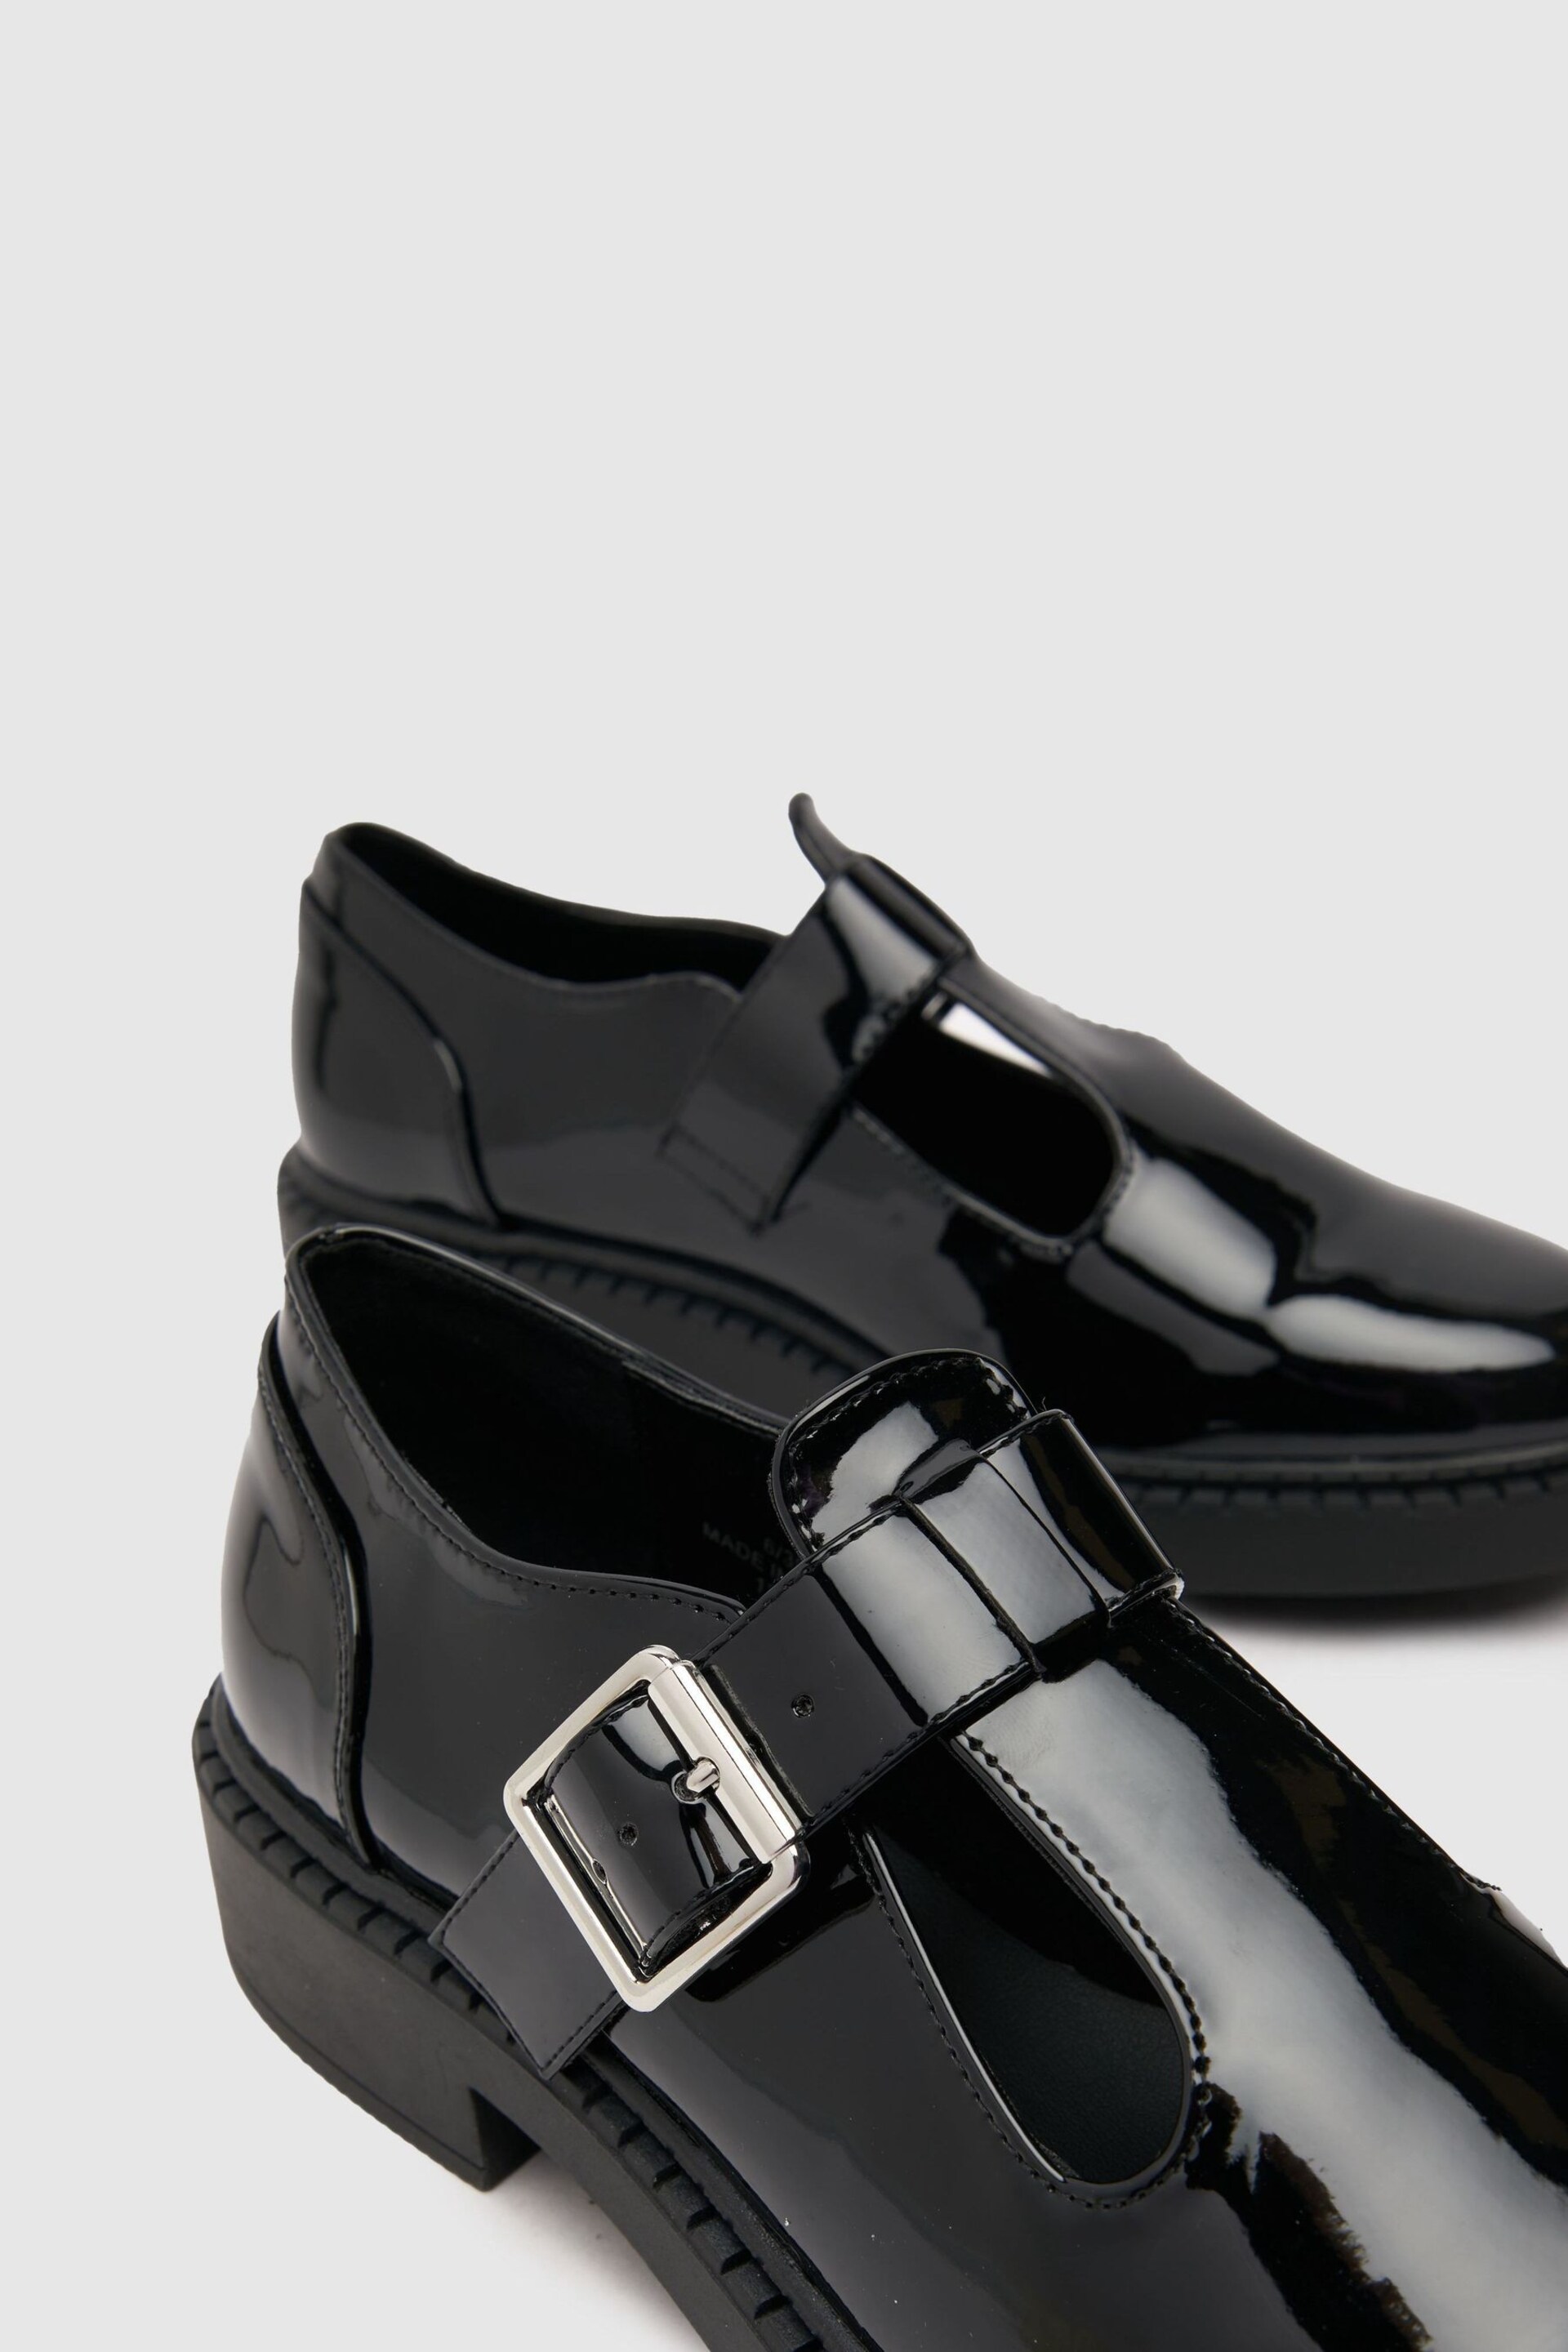 Schuh Leah Patent Black T-Bar Shoes - Image 3 of 4